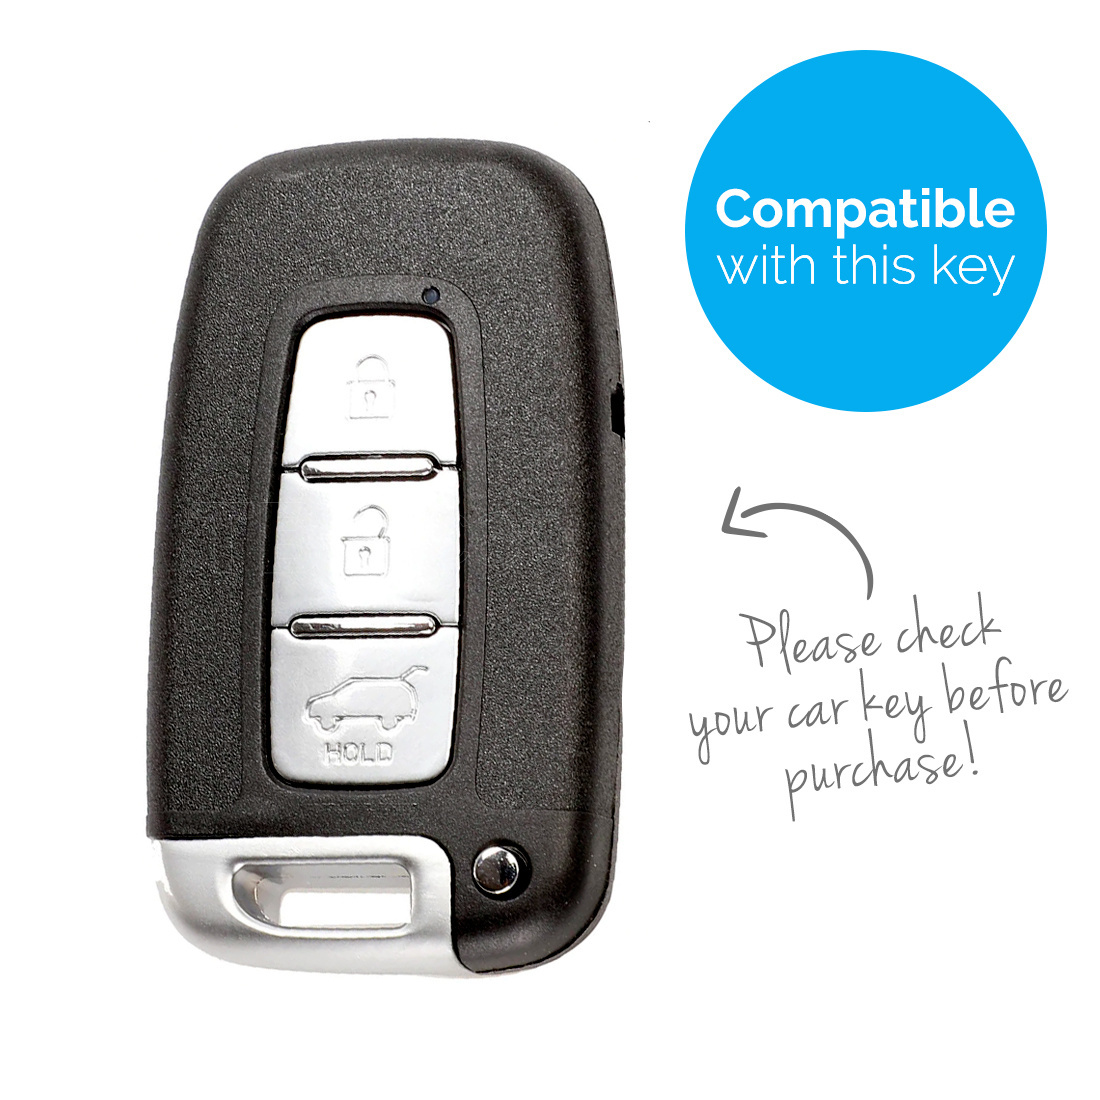 TBU car TBU car Cover chiavi auto compatibile con Kia - Copertura protettiva - Custodia Protettiva in Silicone - Rosa